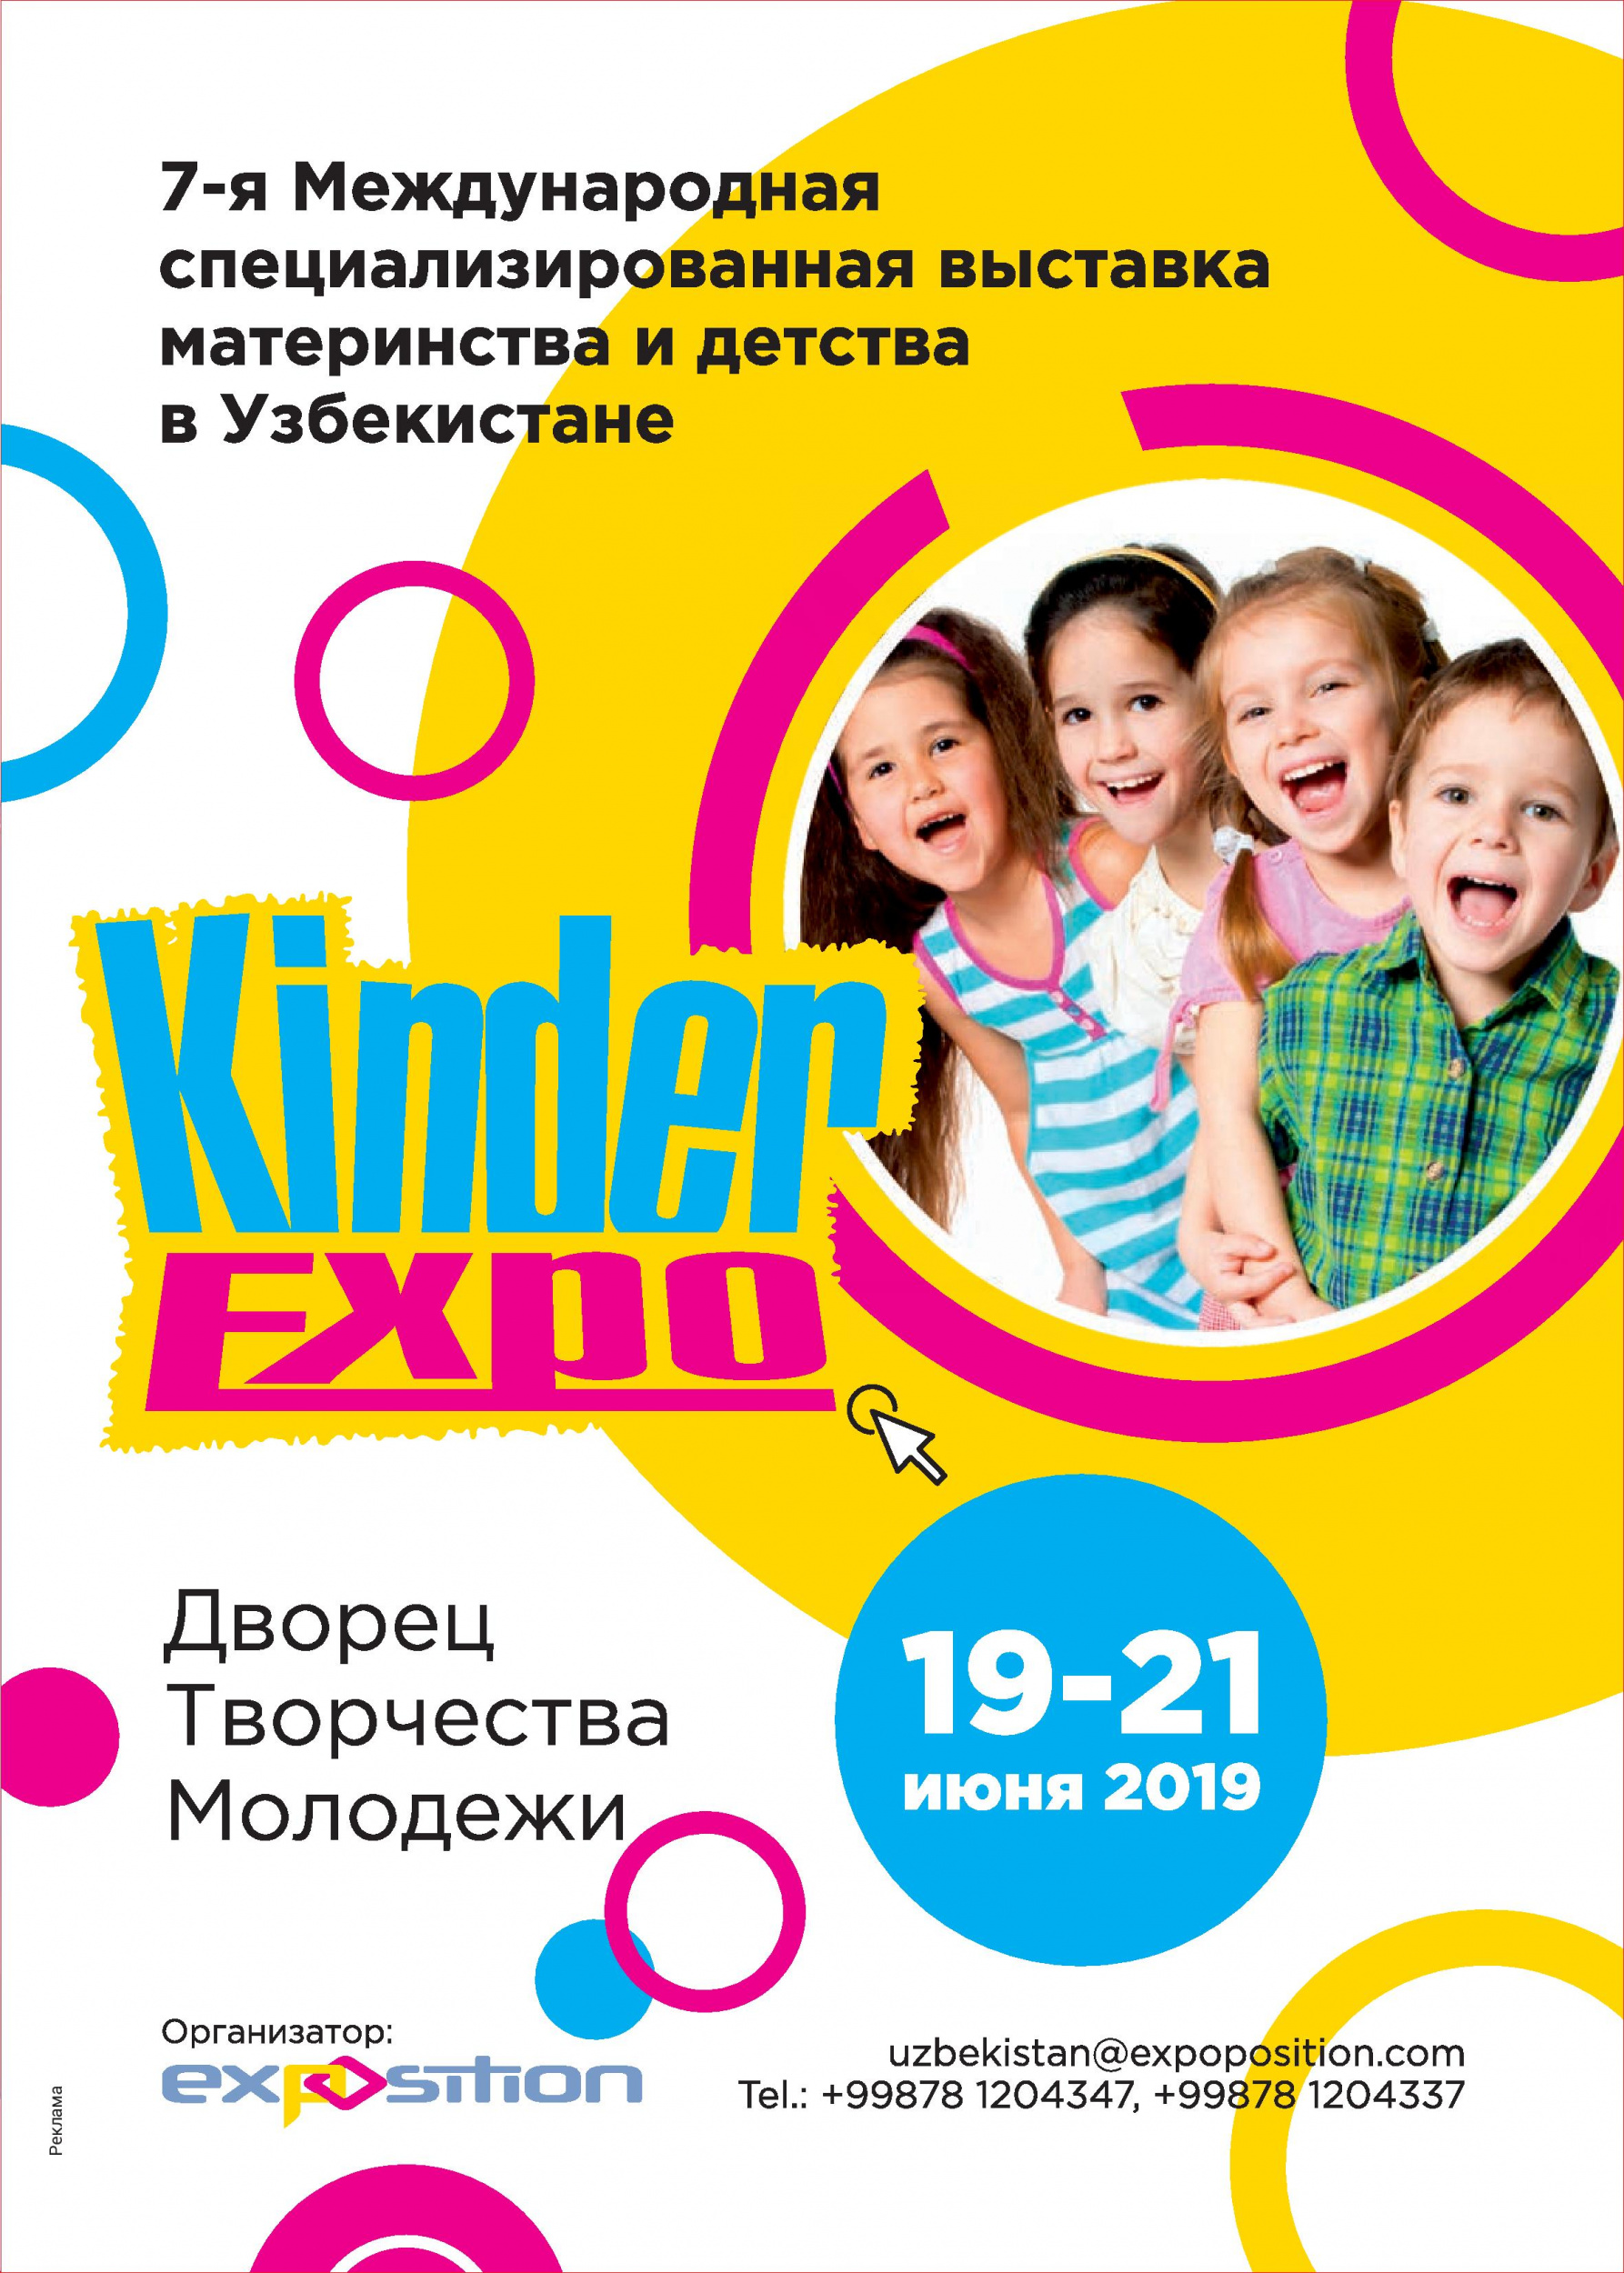 7-я Международная Выставка Материнства и Детства в Узбекистане